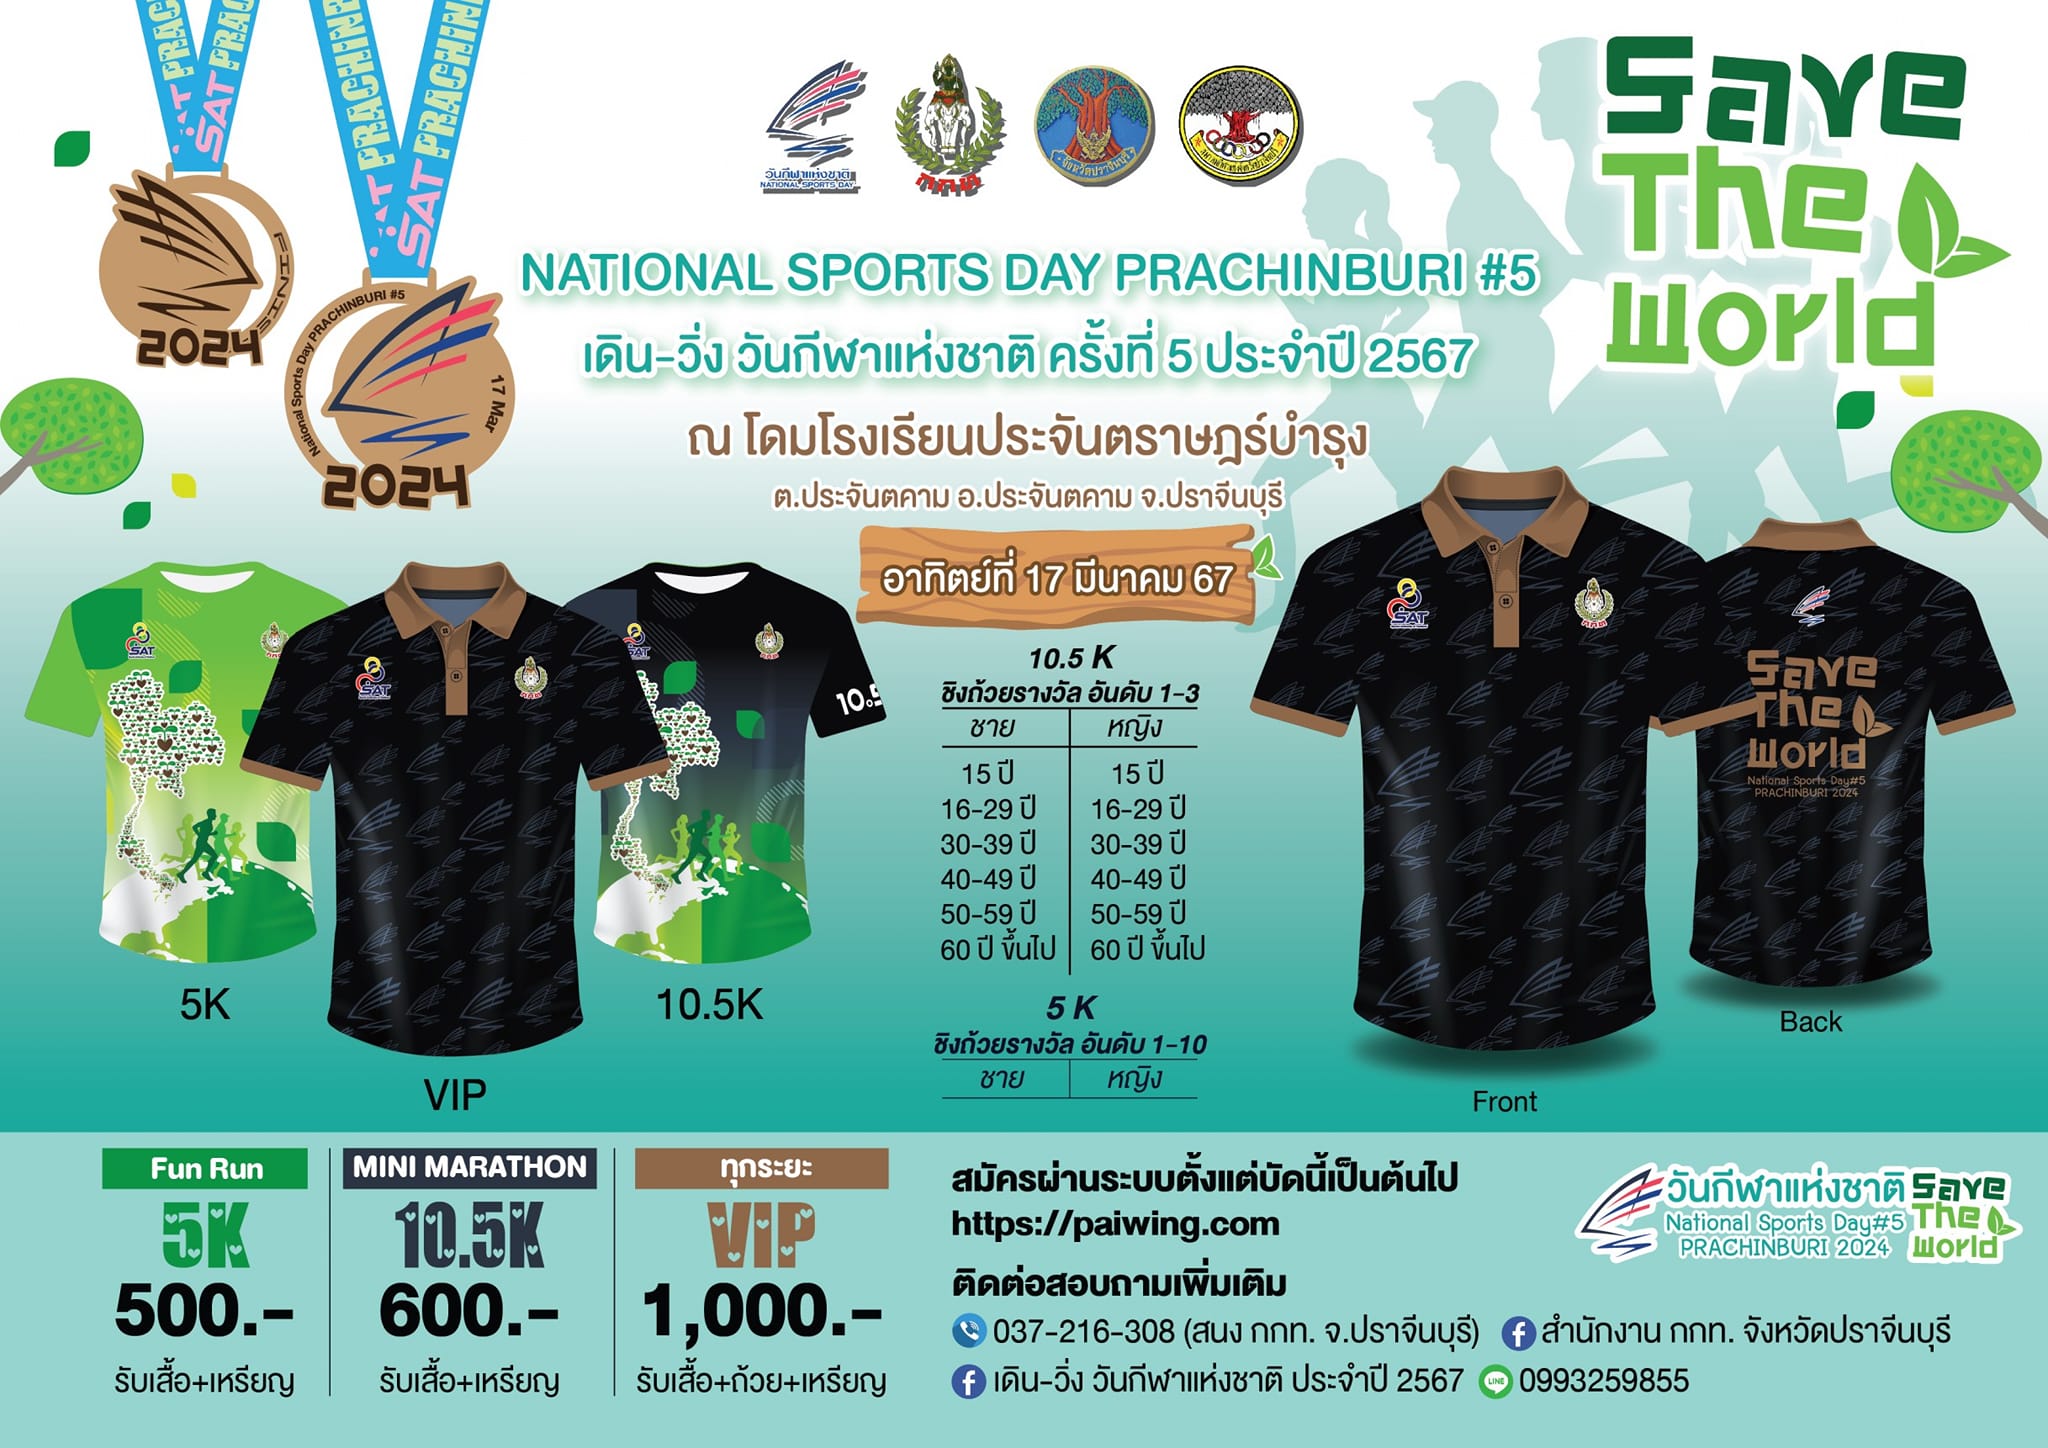 กิจกรรมเดิน - วิ่ง วันกีฬาแห่งชาติ ครั้งที่ 5 ประจำปี 2567 National Sports Day Prachin Buri